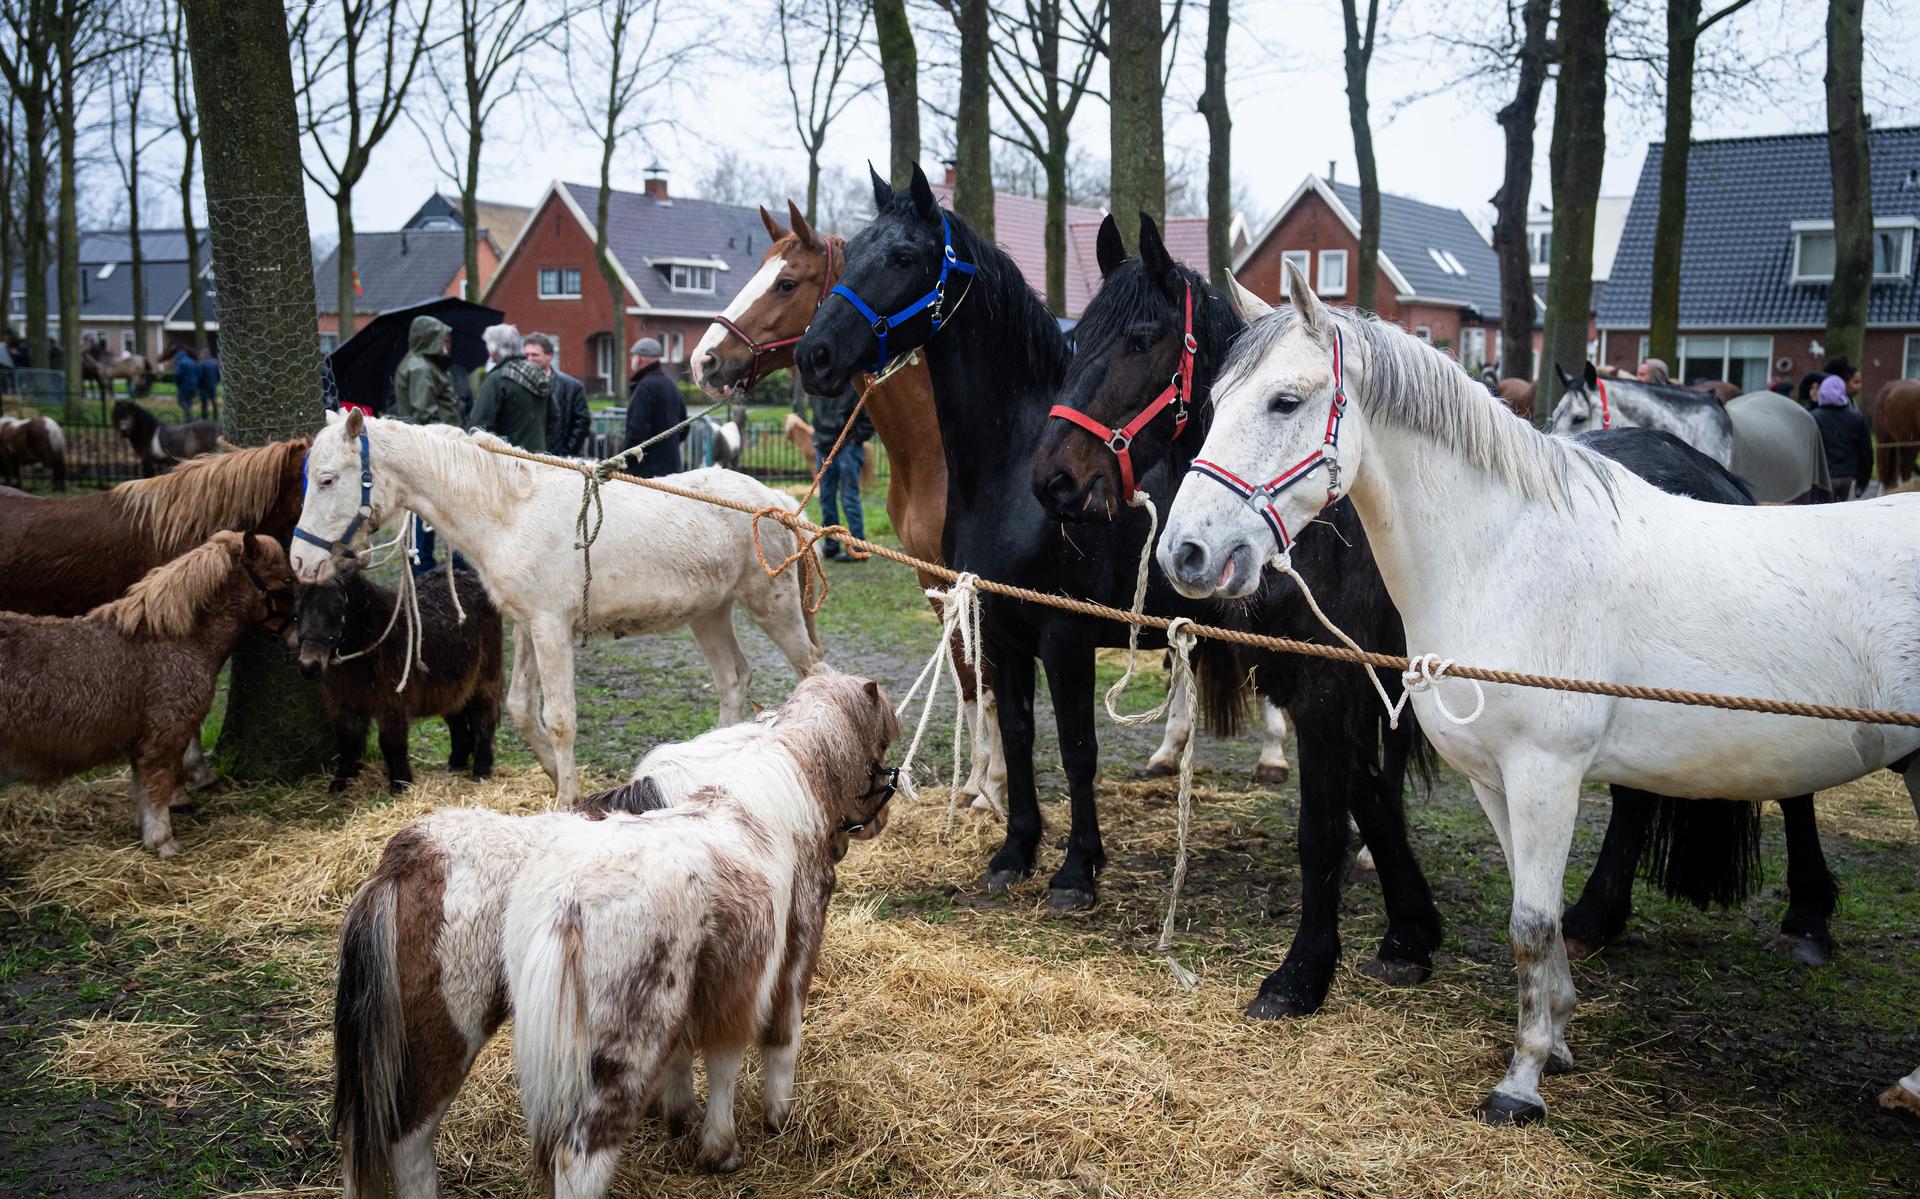 Ondanks de regen werden met 198 stuks meer paarden en pony's aangevoerd dan vorig jaar (184) op de voorjaarsmarkt in Zuidlaren. 